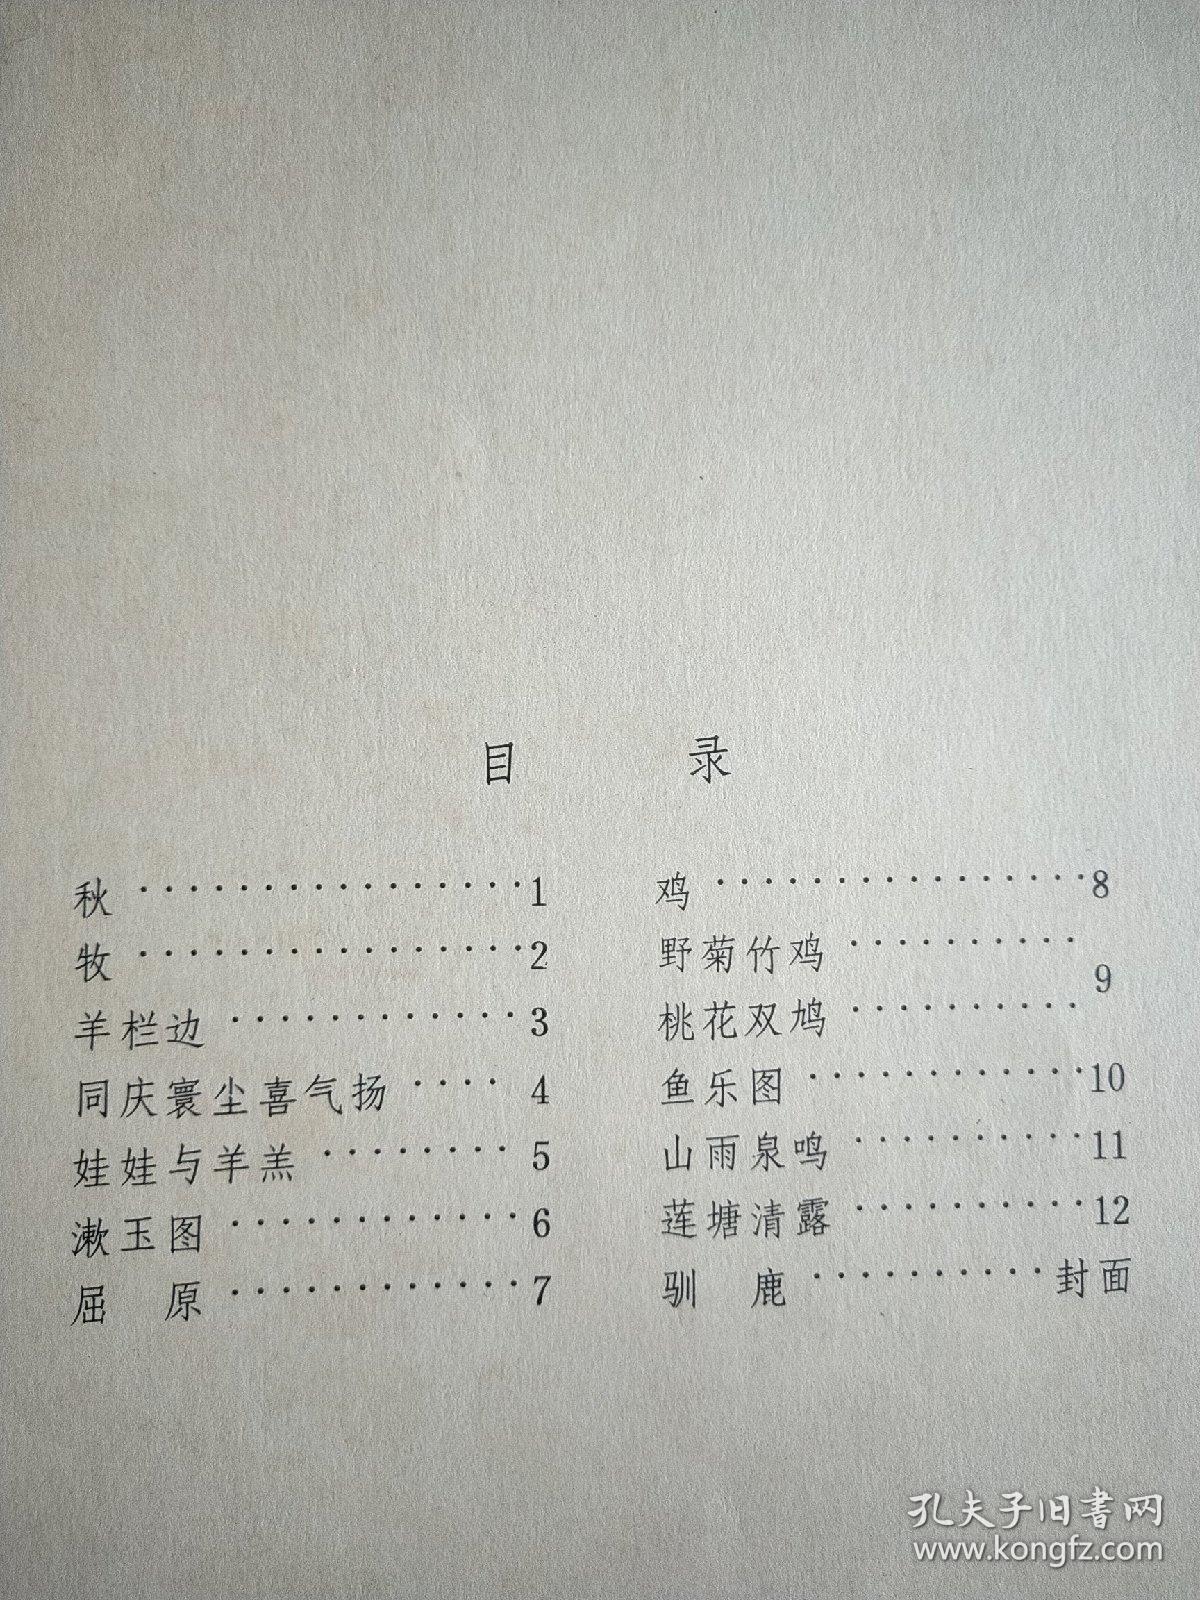 程十发画册 12张全1980年一版一印 。